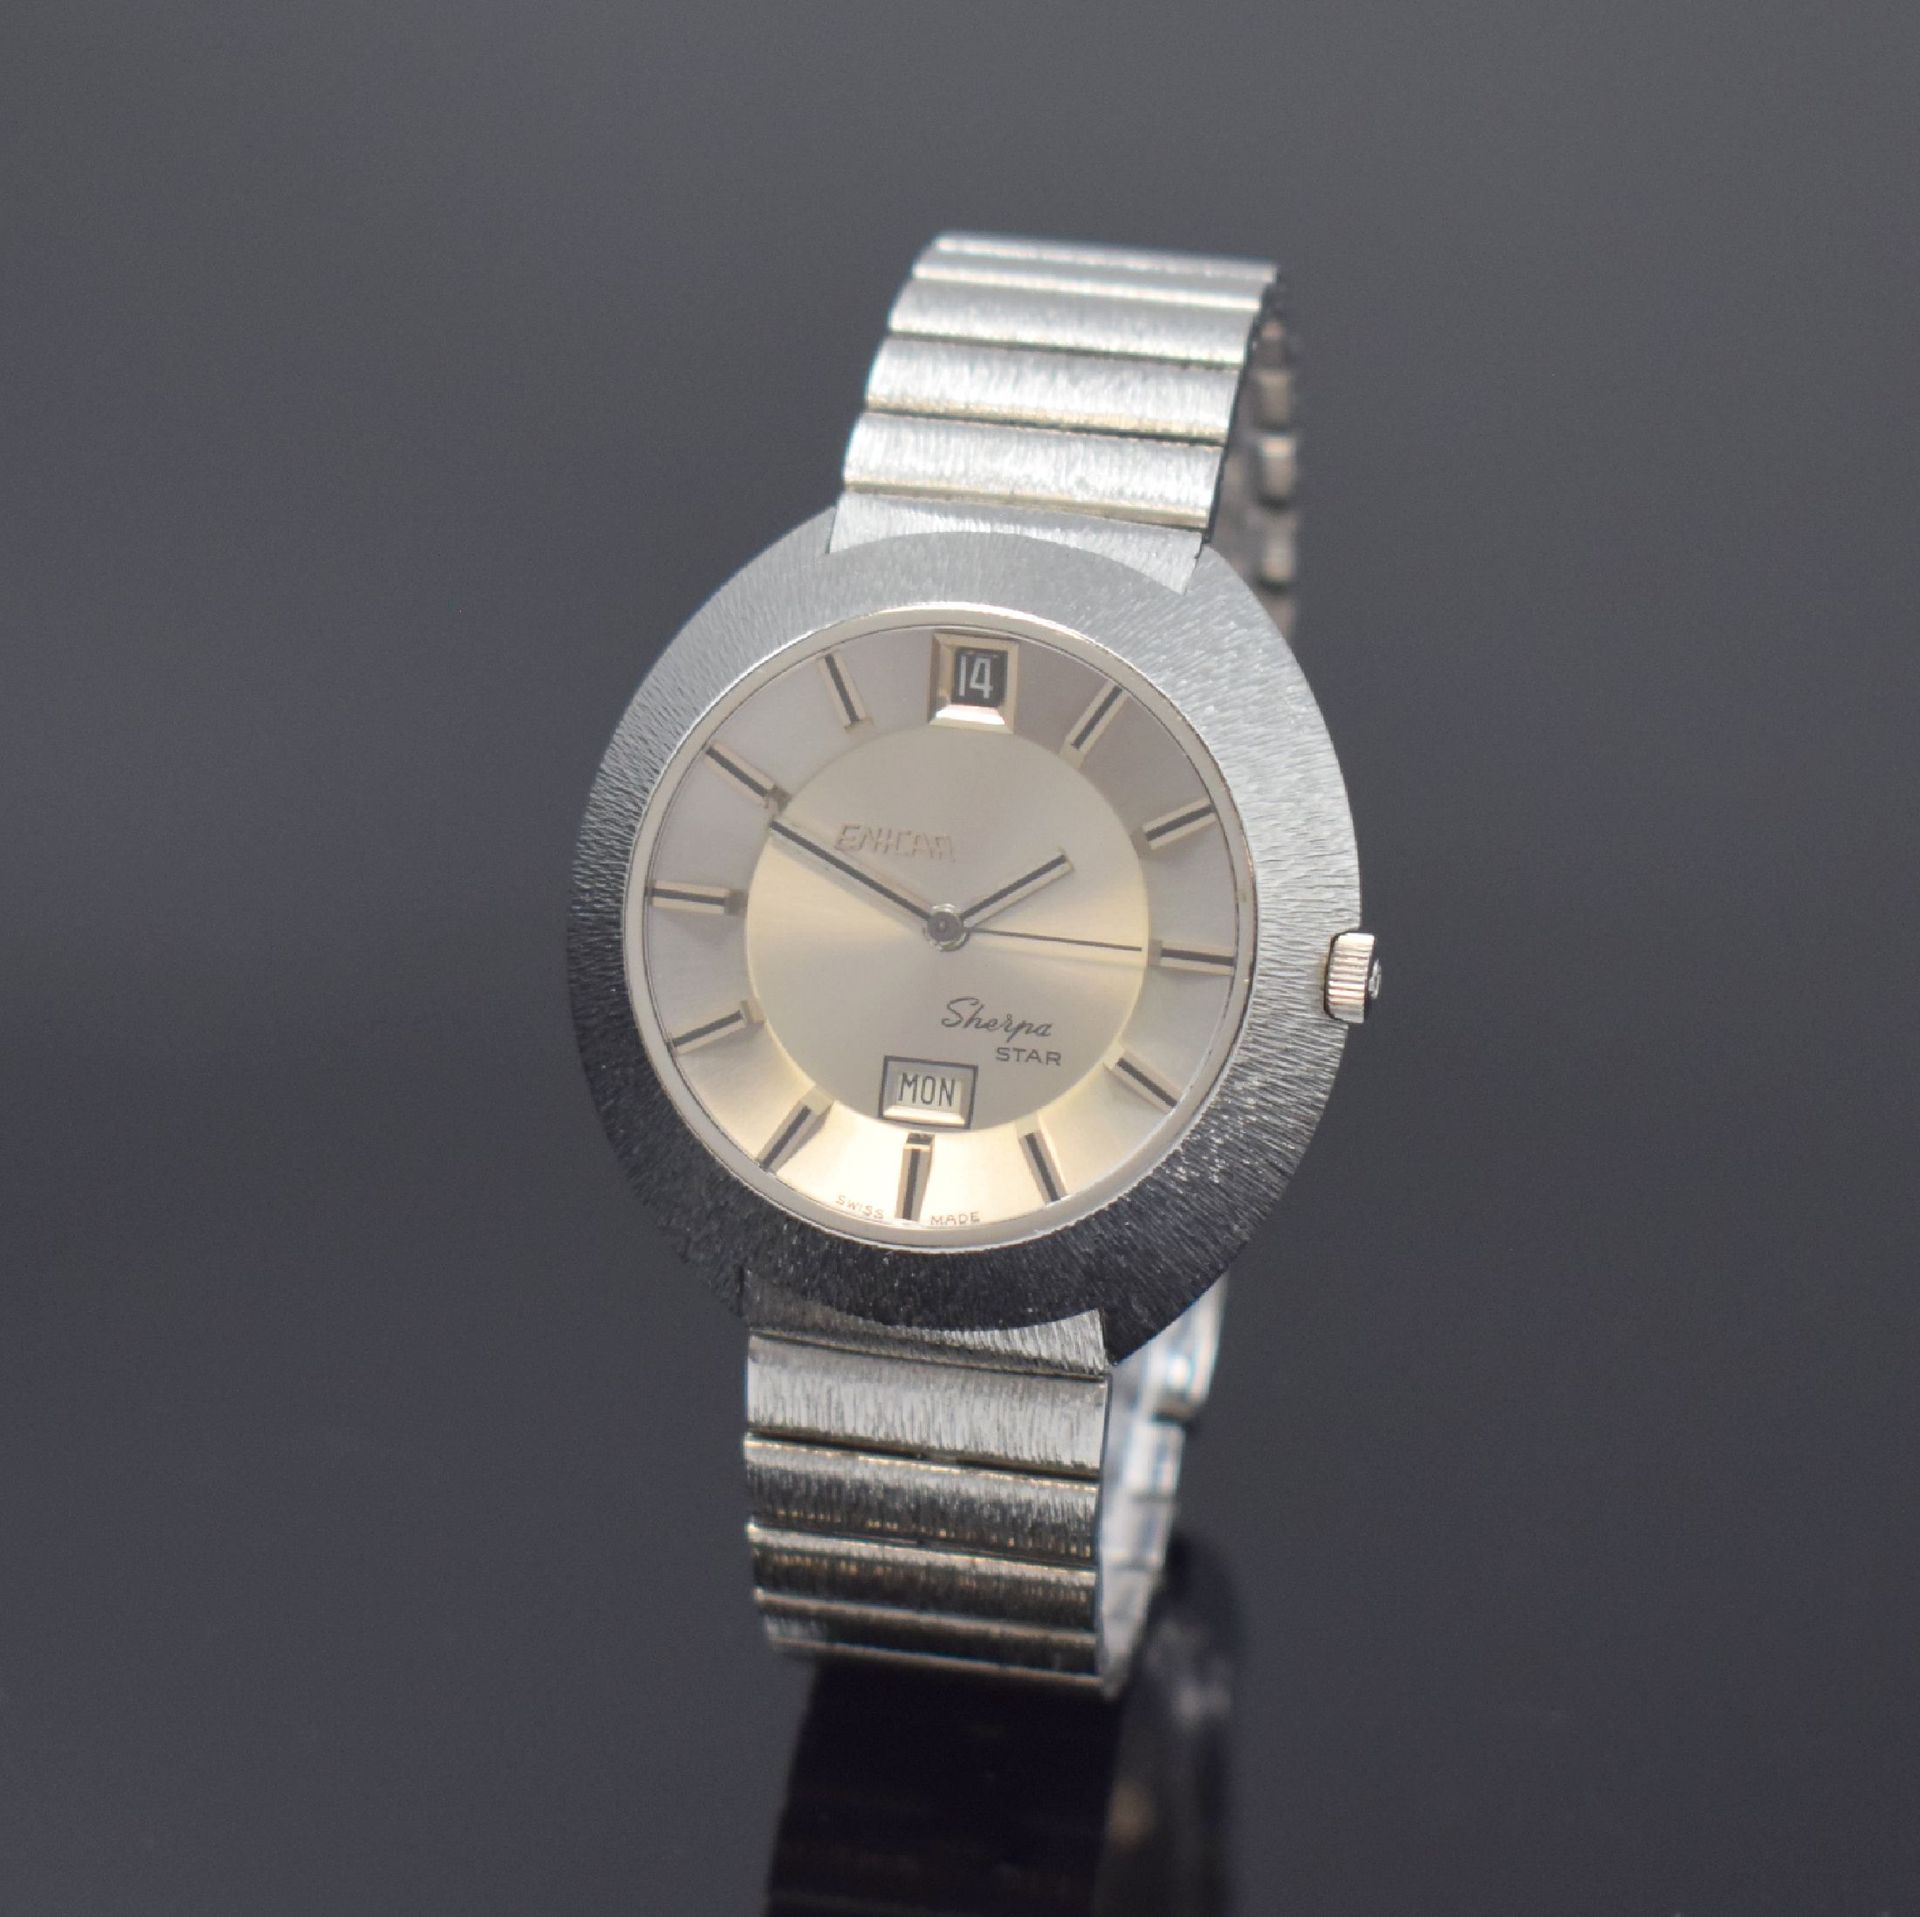 Null ENICAR SHERPA Star montre-bracelet référence 2342, Suisse vers 1965, automa&hellip;